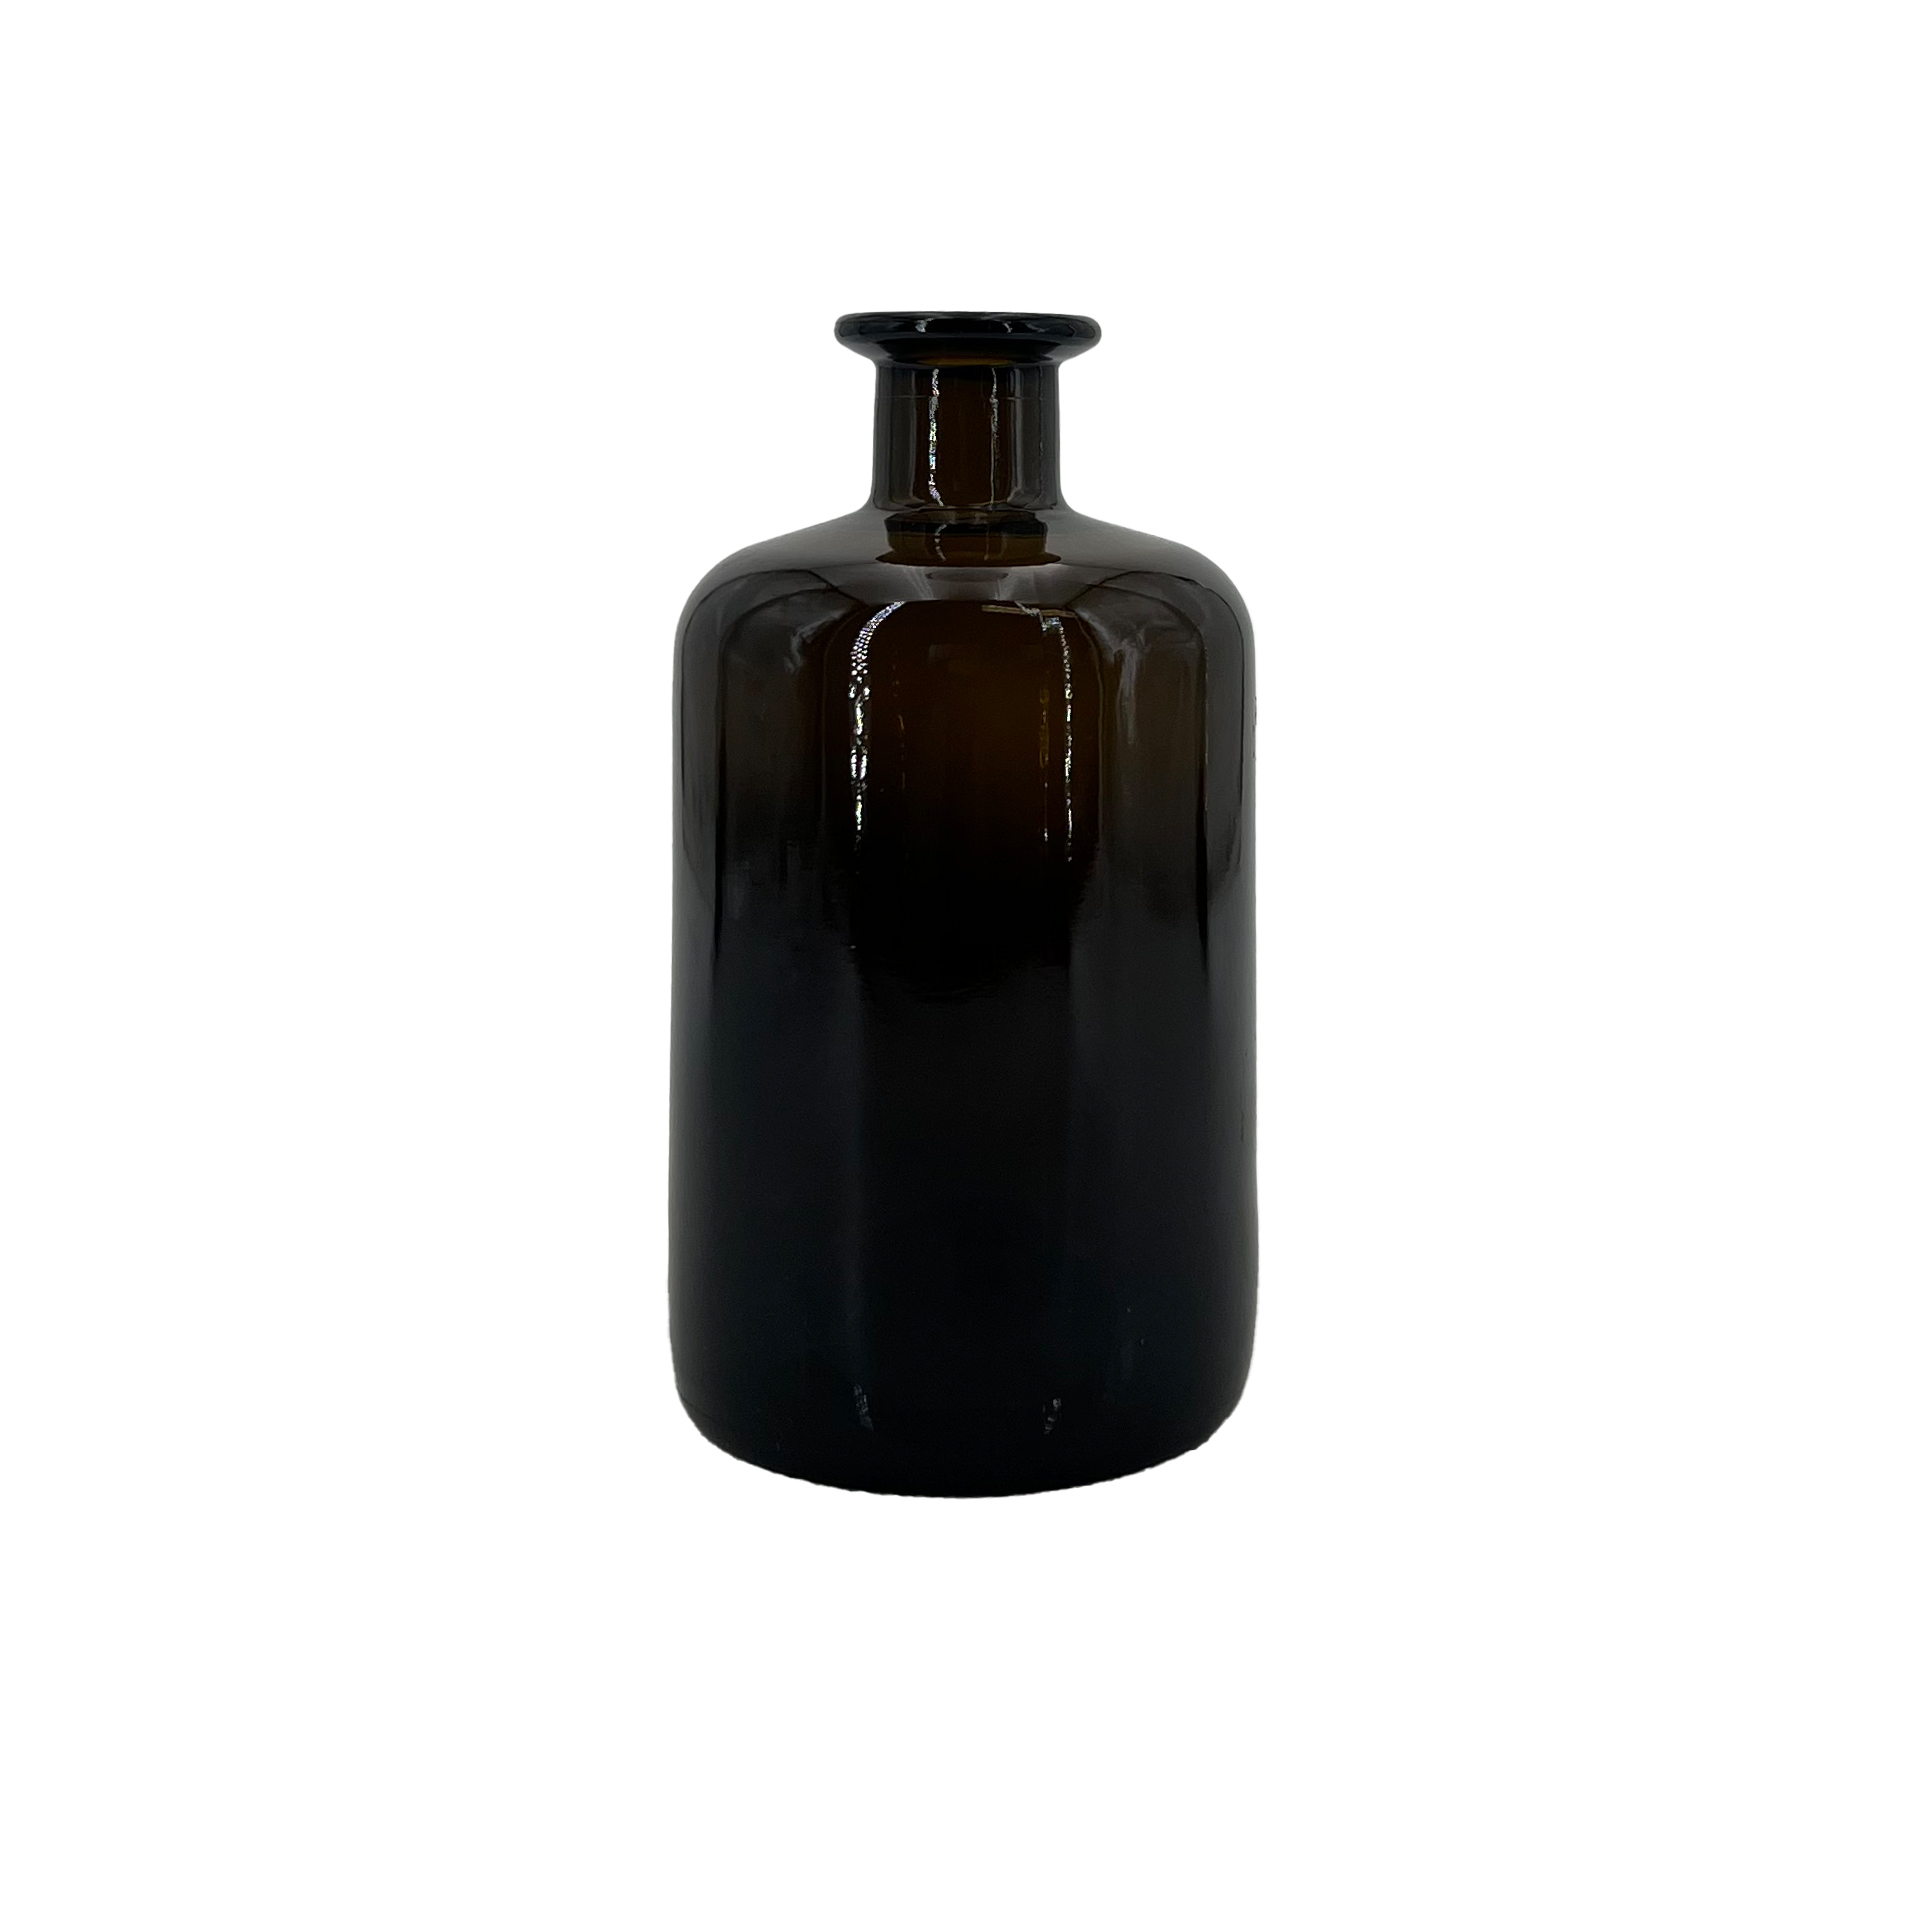 Apothekerflasche 0,5 Liter, braun (OHNE VERSCHLUSS)